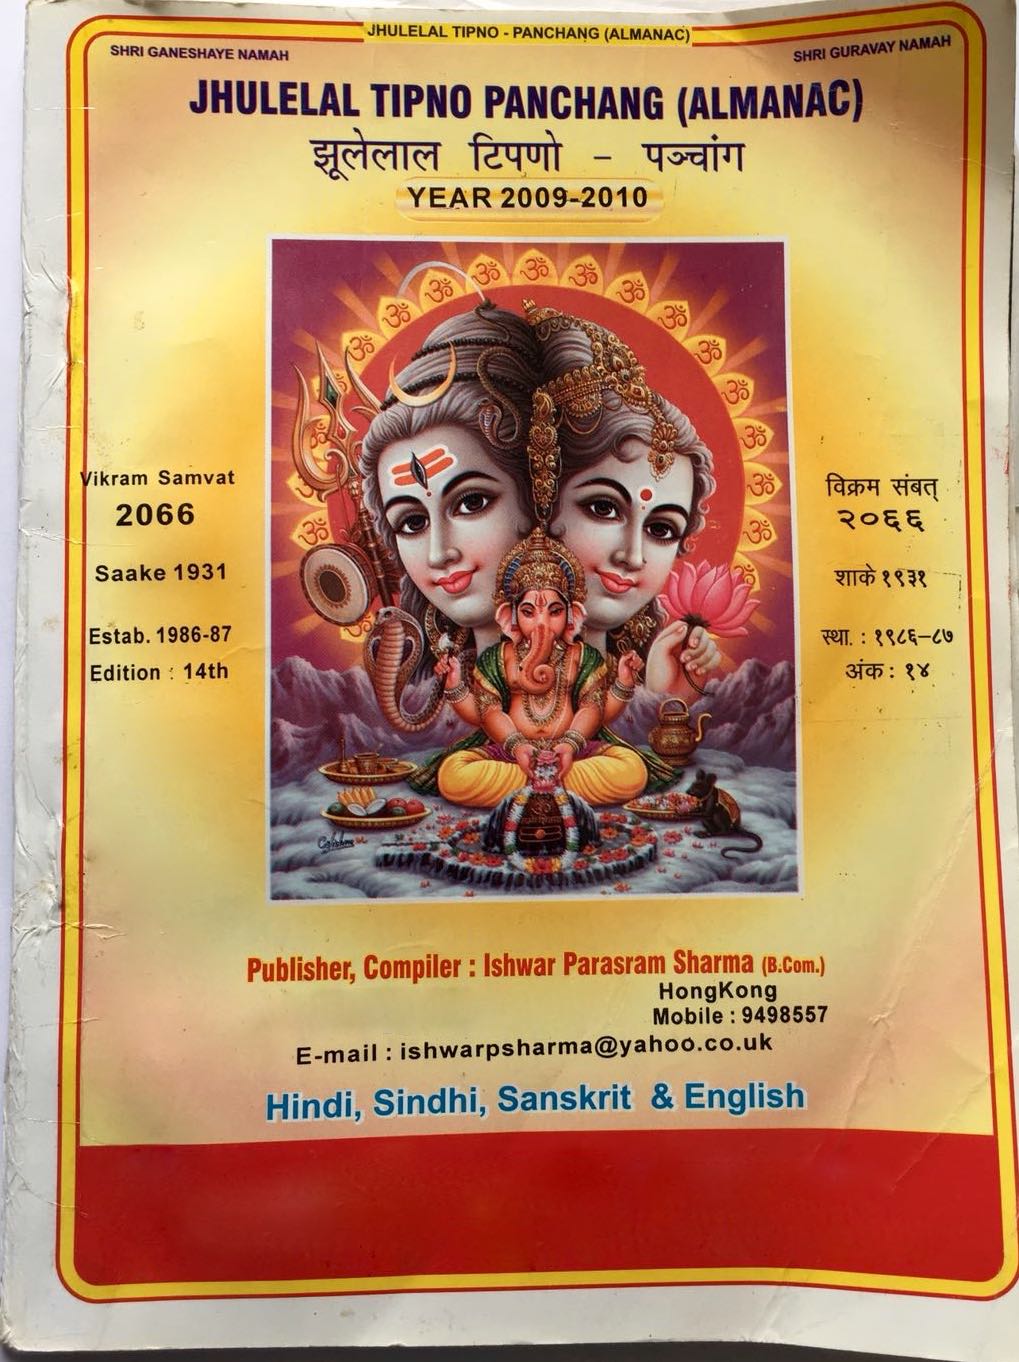 Jhulelal Tipno Panchang (Almanac) Year 2009-2010 compiled by Ishwar Parsram Sharma in Hindi, Sindhi, Sanskrit and English -Top cover page English side